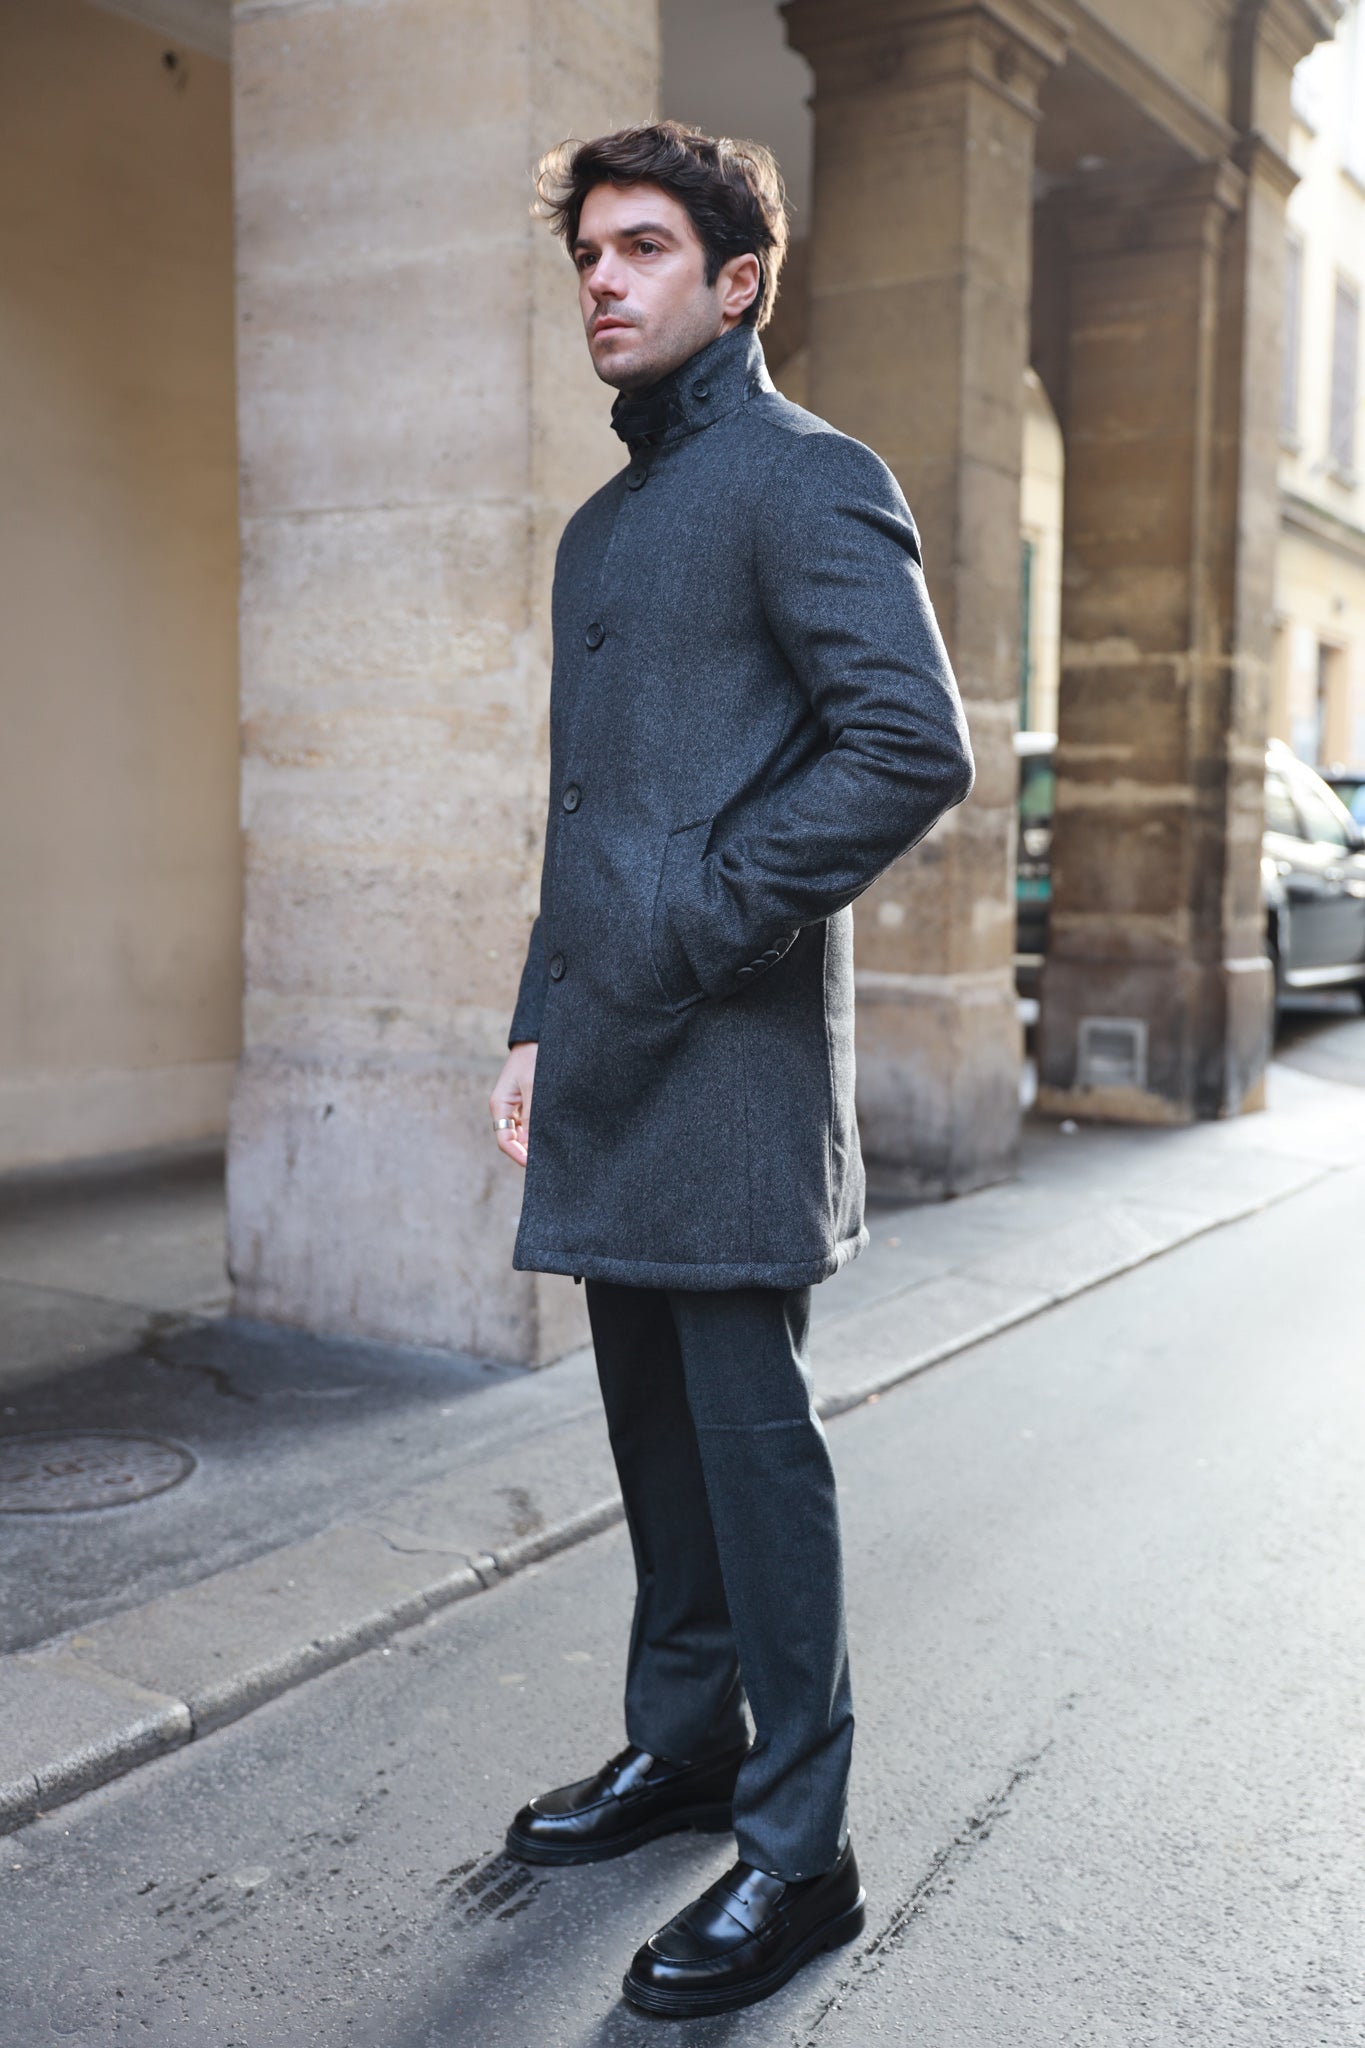 Manteau homme en laine & cachemire gris anthracite - Curling Paris